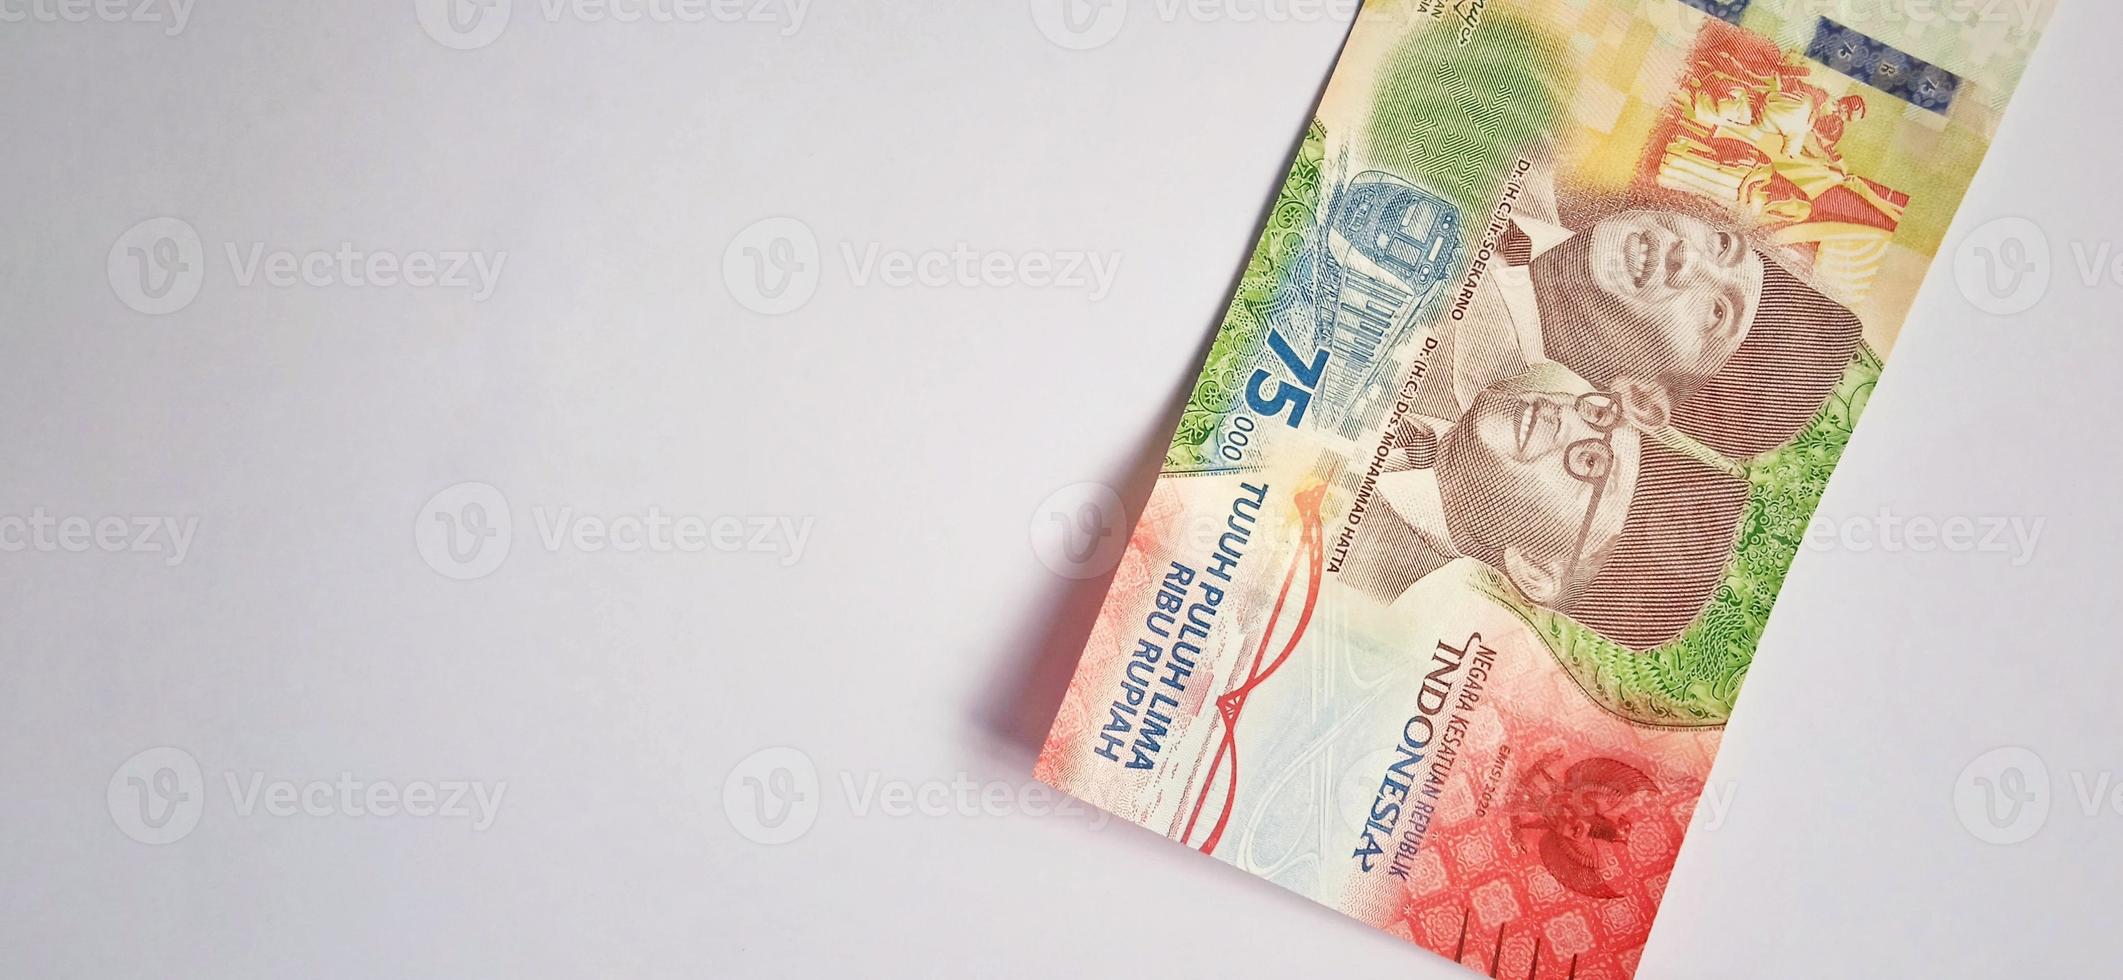 un nuevo billete de 75.000 rupias del banco indonesia con fondo gris. emitido durante la 75ª independencia nacional de indonesia el 17 de agosto de 2020, período de 1945-2020. moneda indonesia. foto